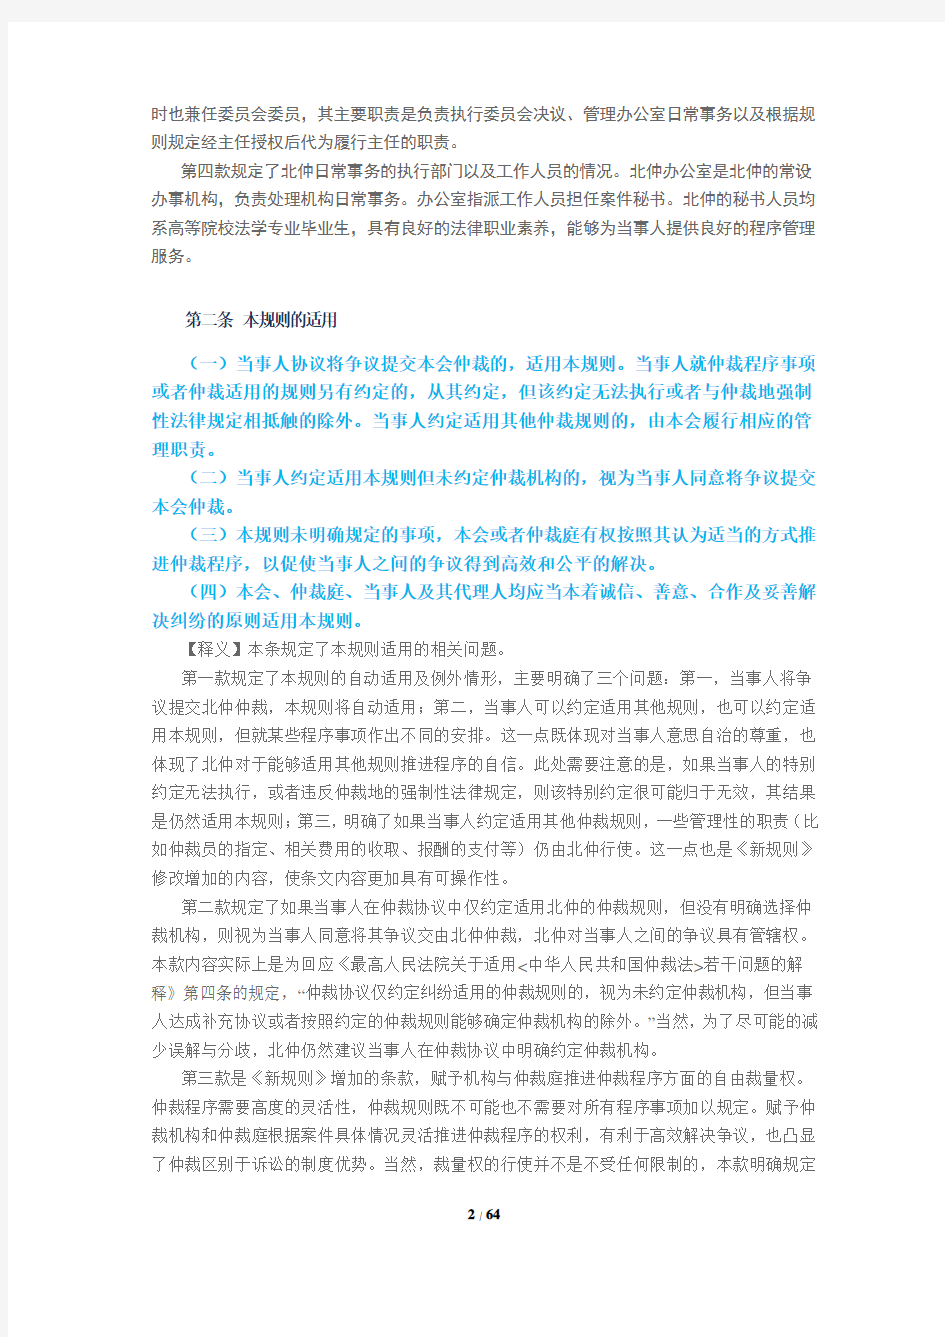 《北京仲裁委员会仲裁规则》(2014年12月修改)条款释义